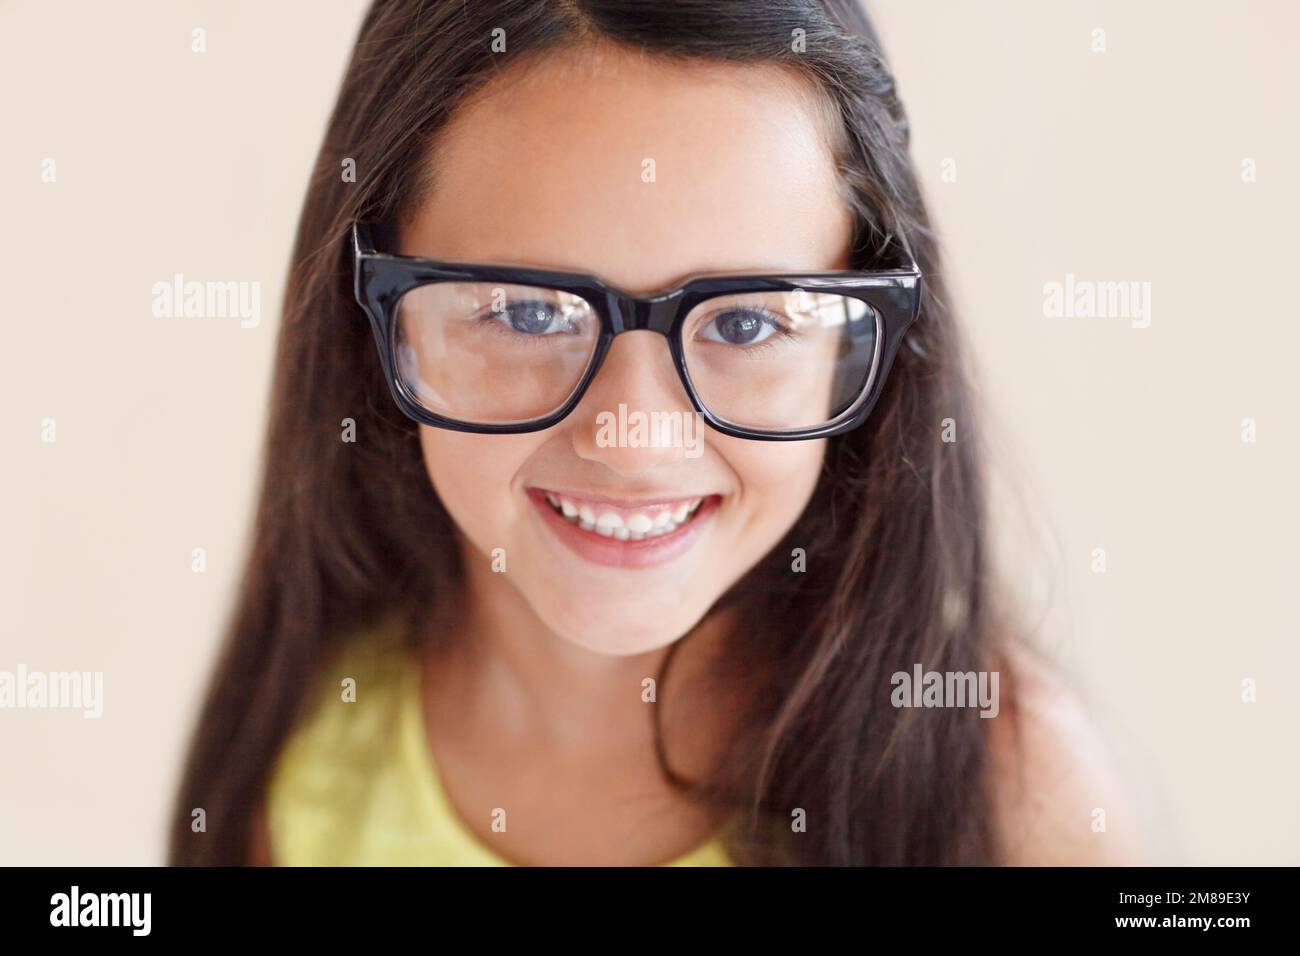 Ich werde in sie hineinwachsen... Nahporträt eines süßen jungen Mädchens, das eine große Brille trägt. Stockfoto